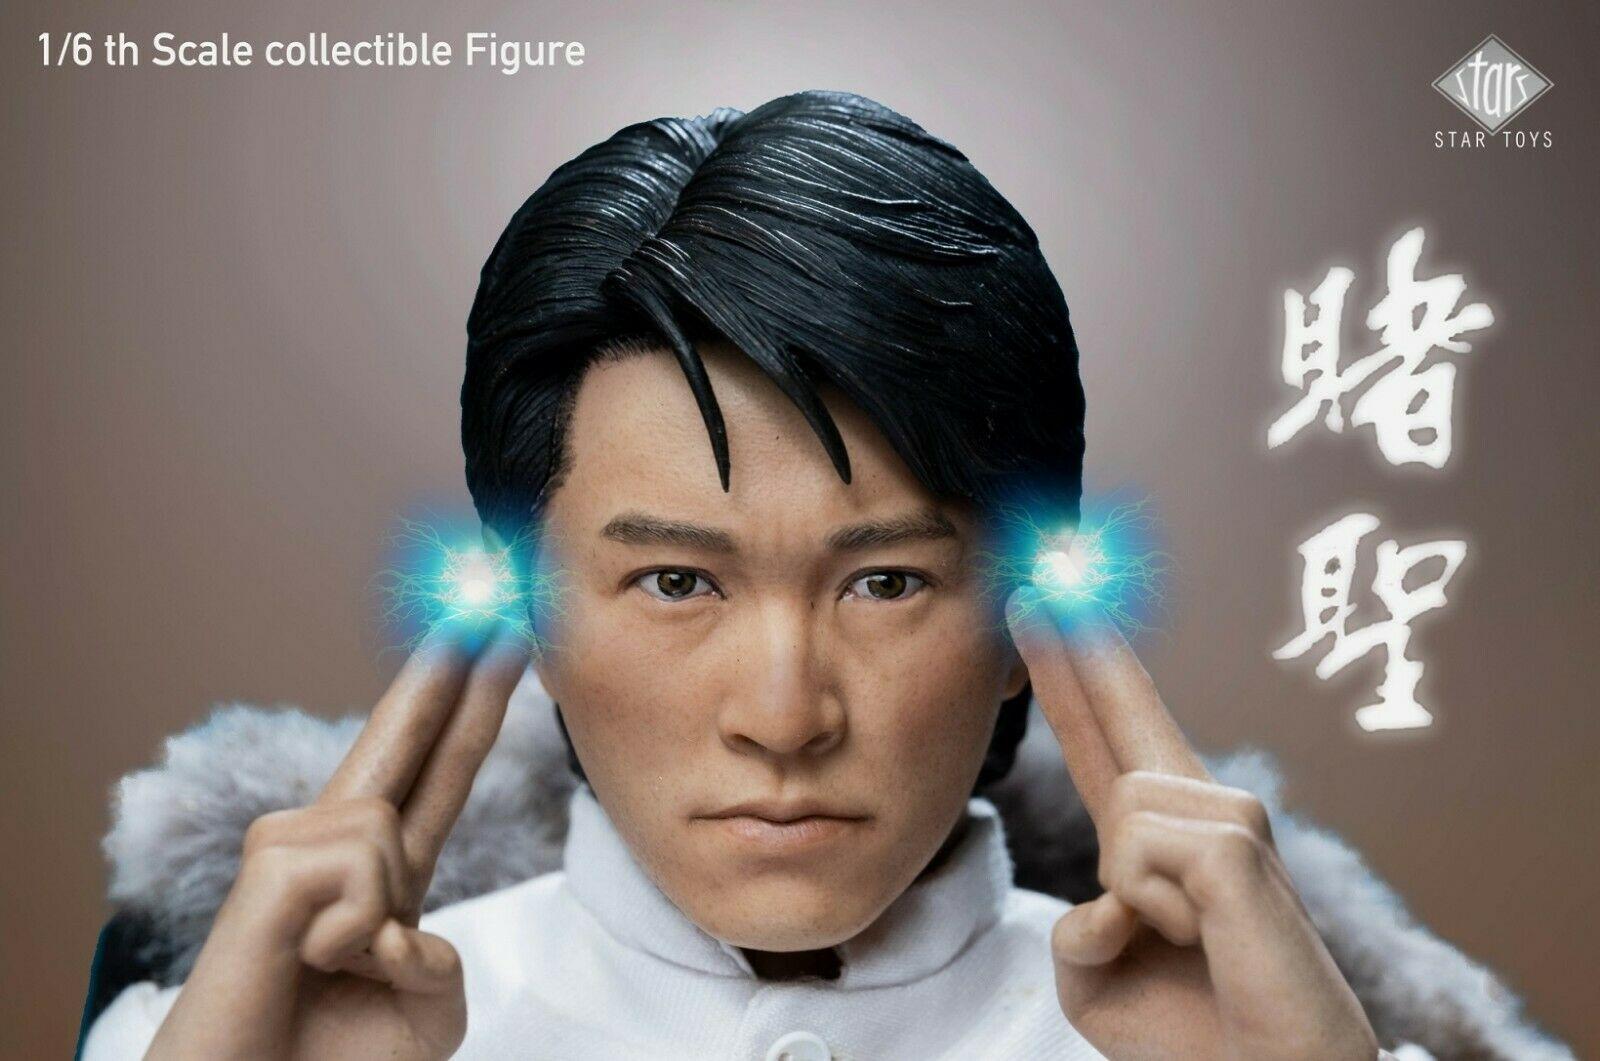 Изображение товара: Звездные игрушки STT002 1/6 фигурка модели все для победителя Zuo Songxing Stephen Chow